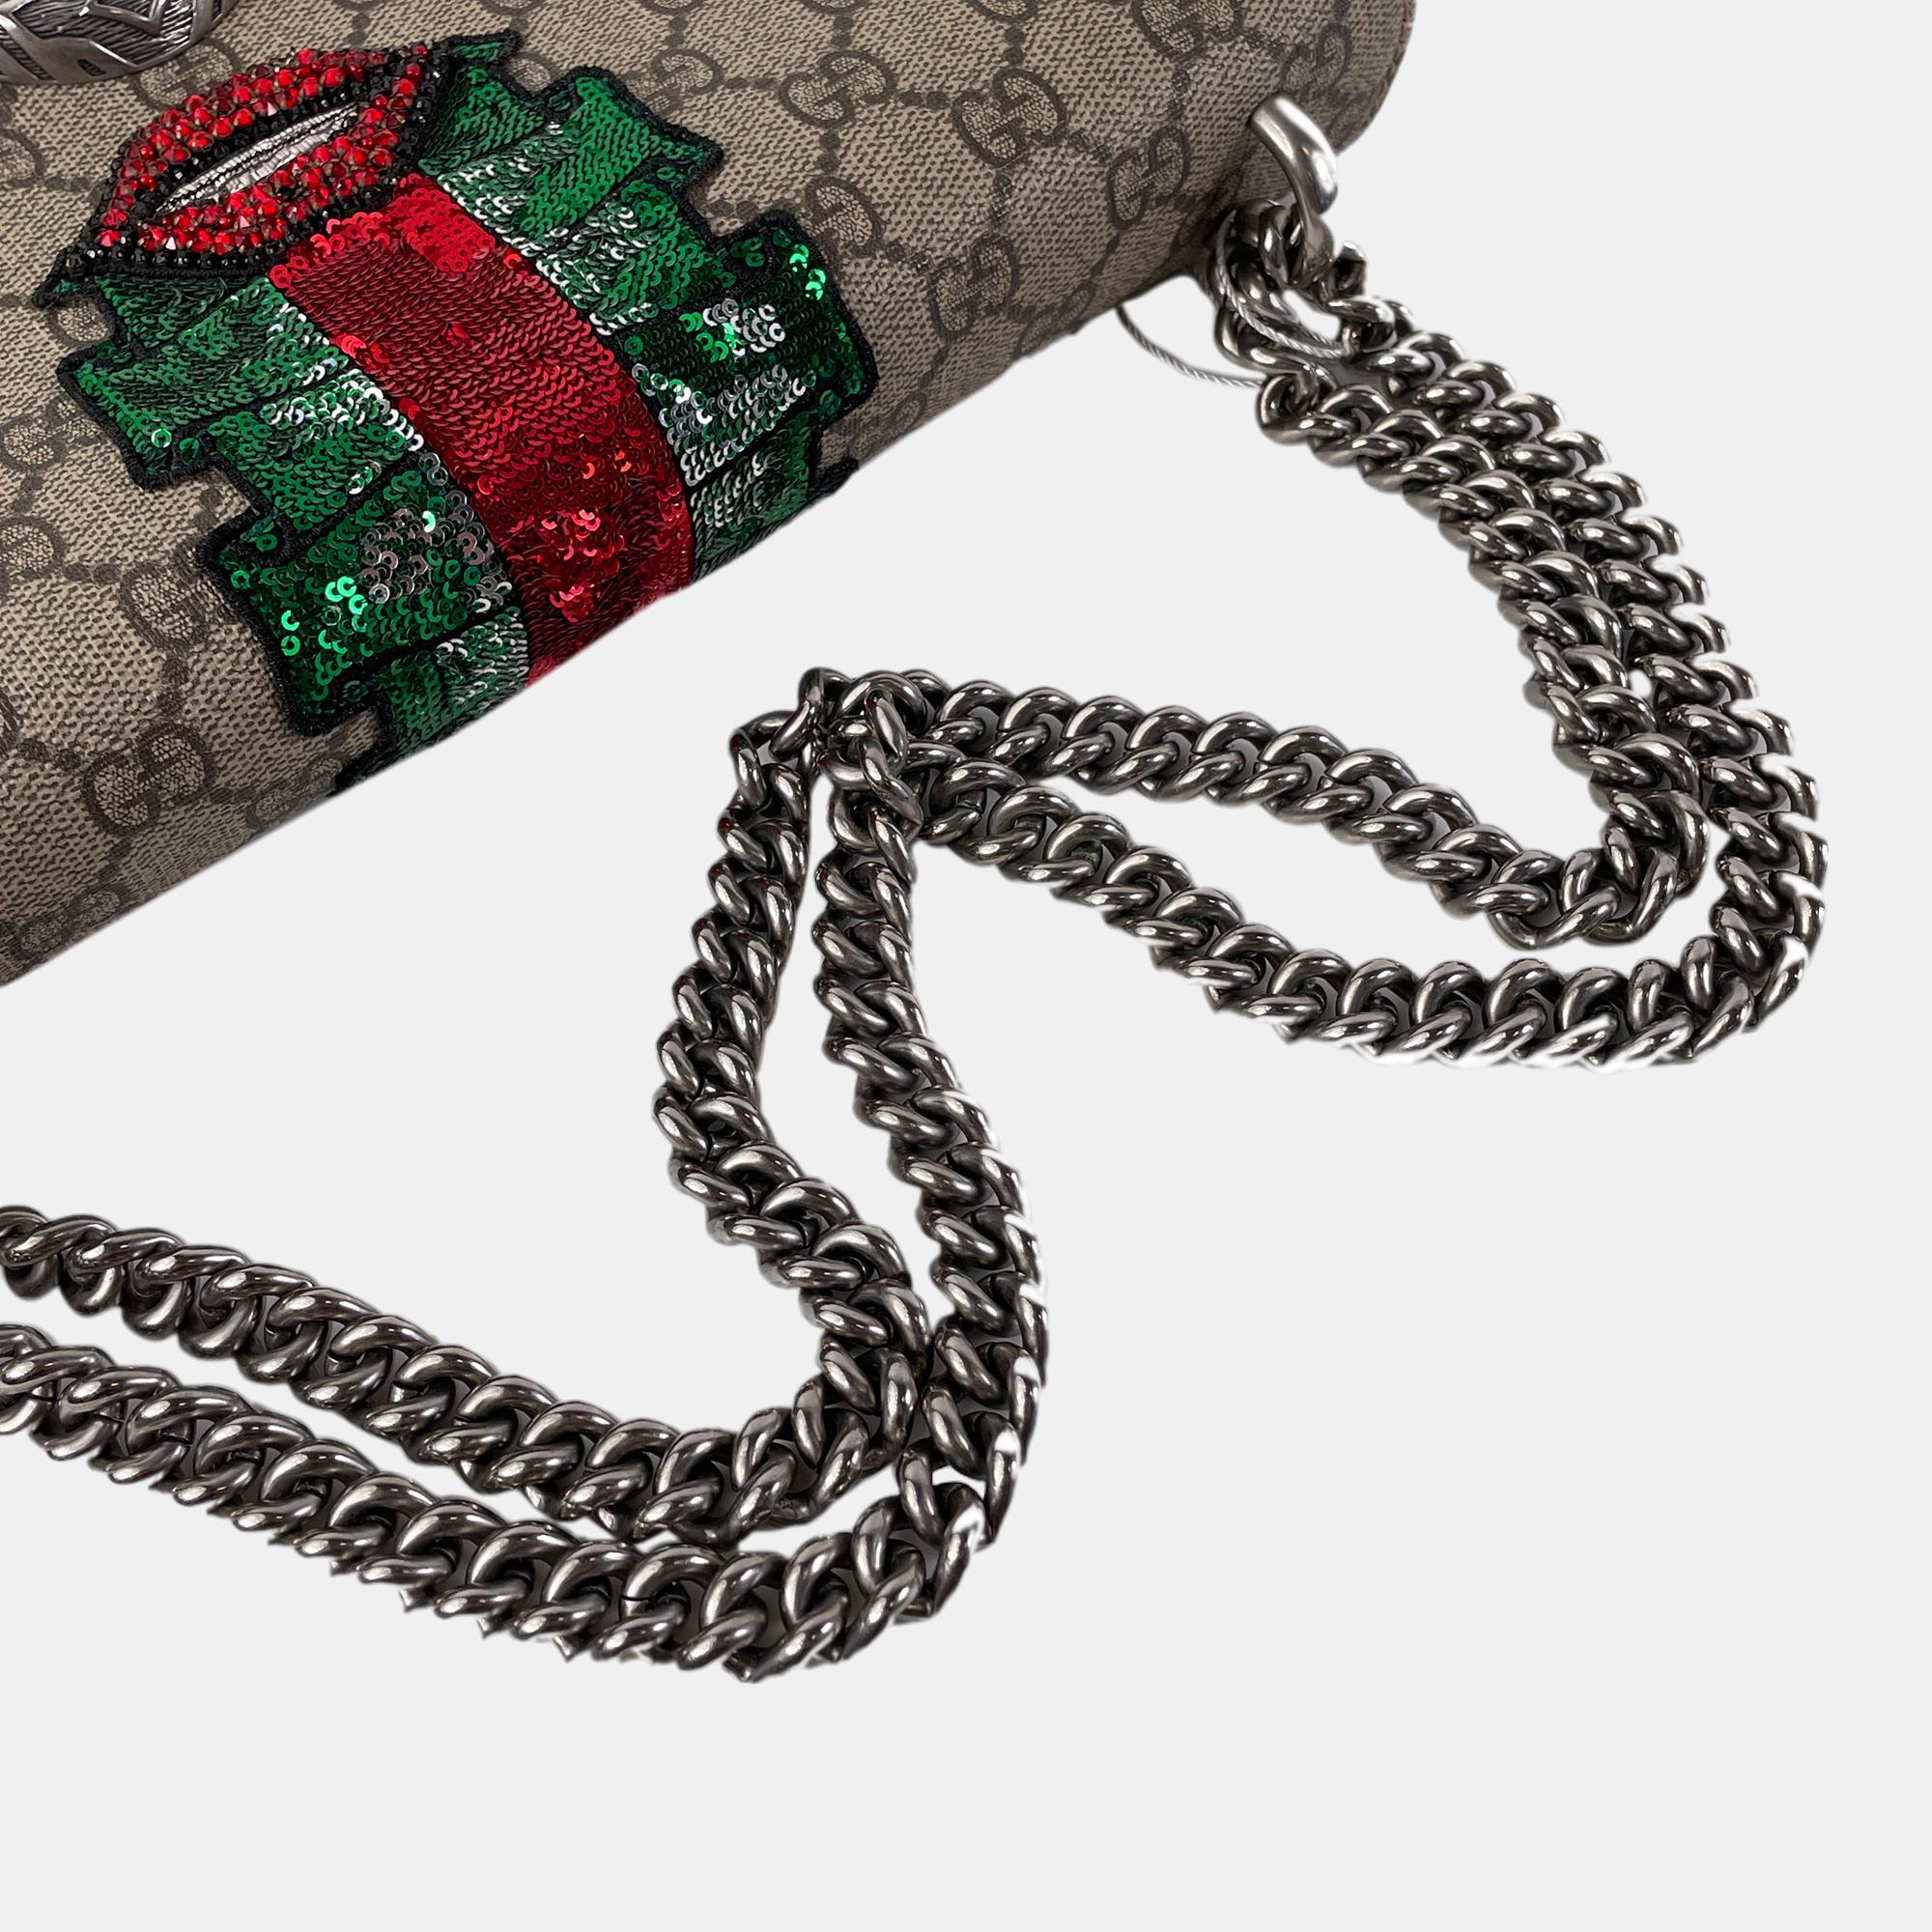 Gucci Beige/Brown Medium Embellished GG Supreme Dionysus Shoulder Bag